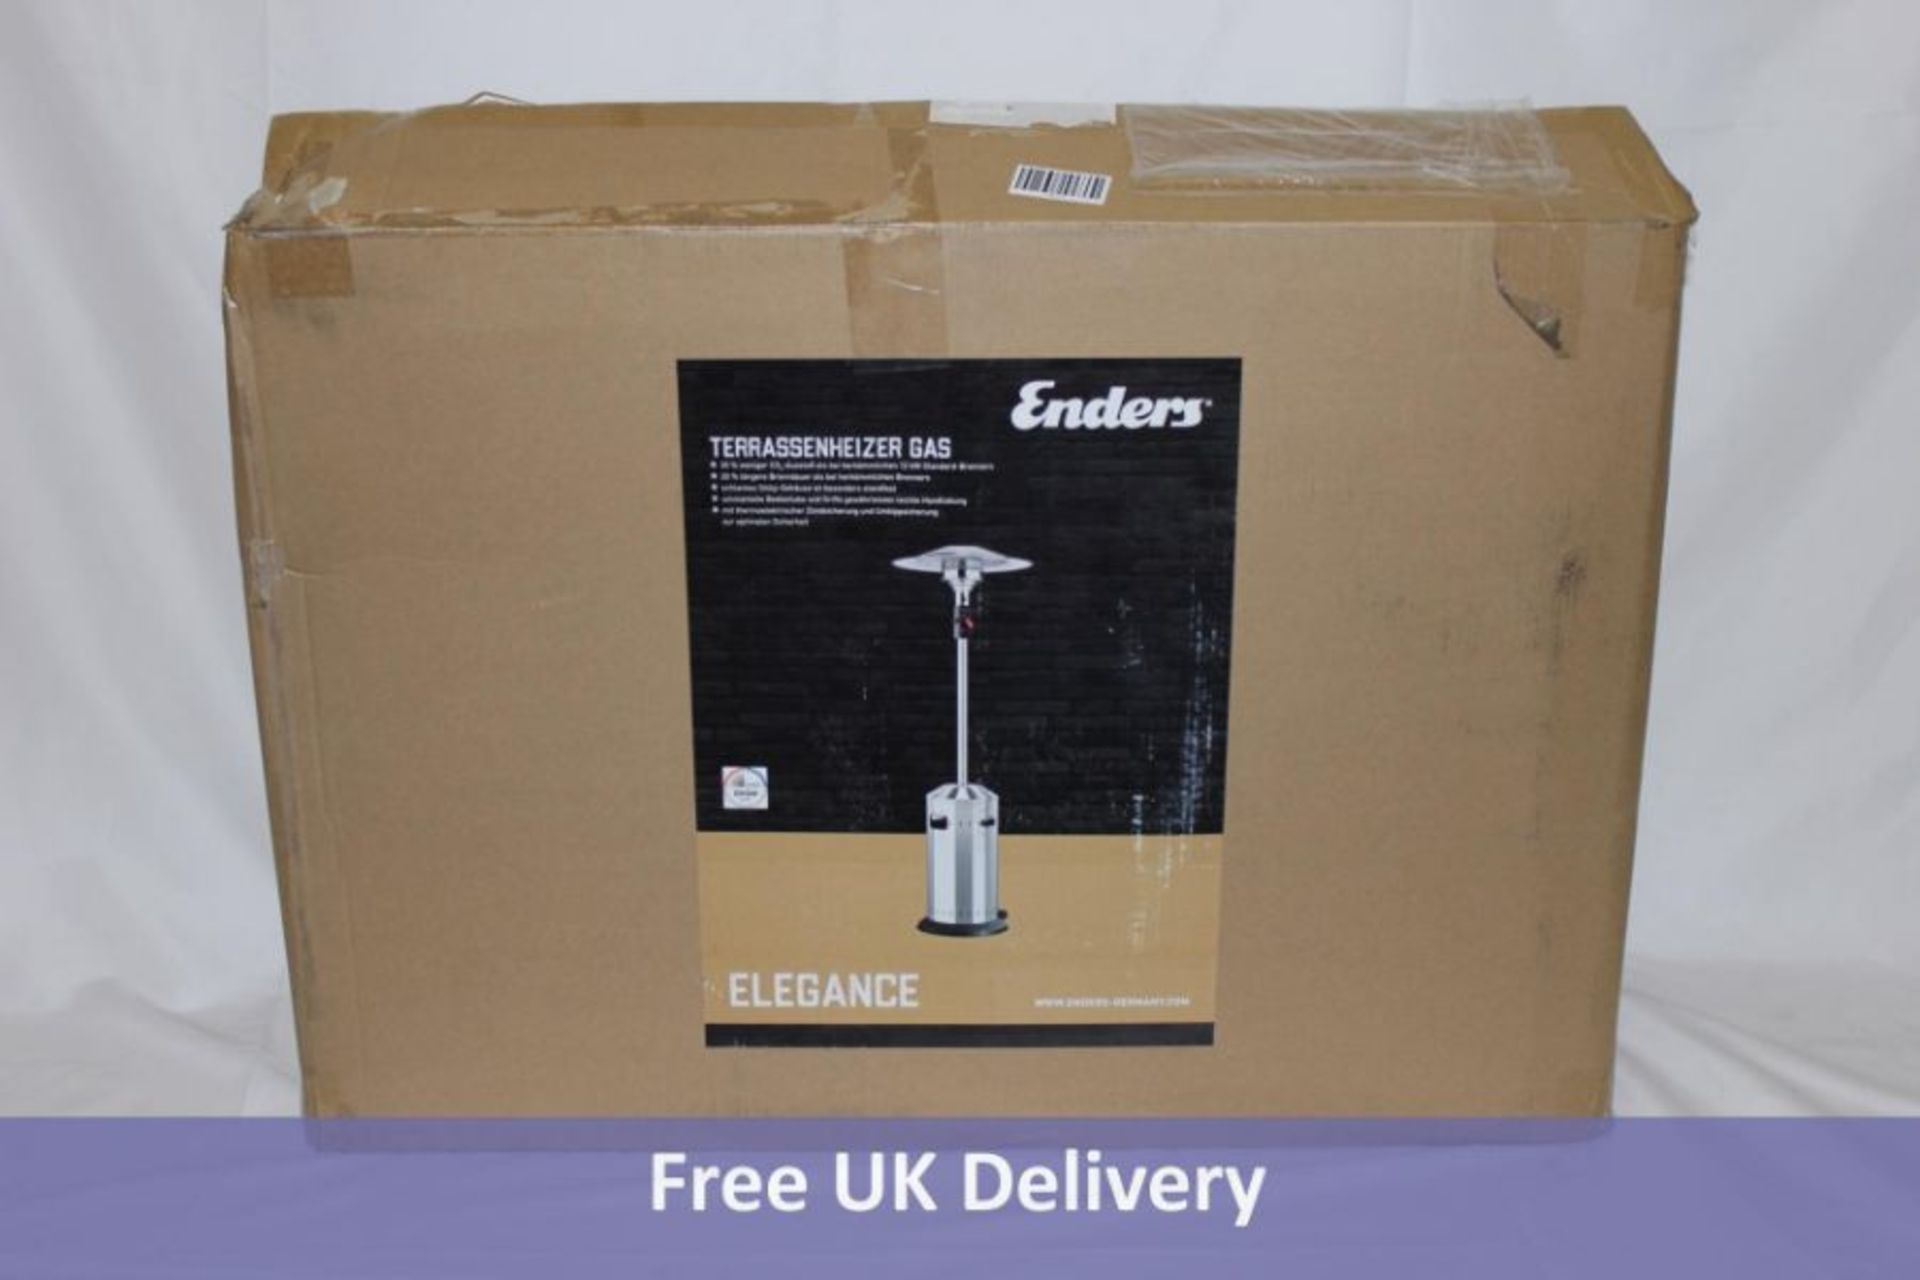 Enders Elegance Gas Patio Heater, 8 kW, 30mbar, Stainless Steel